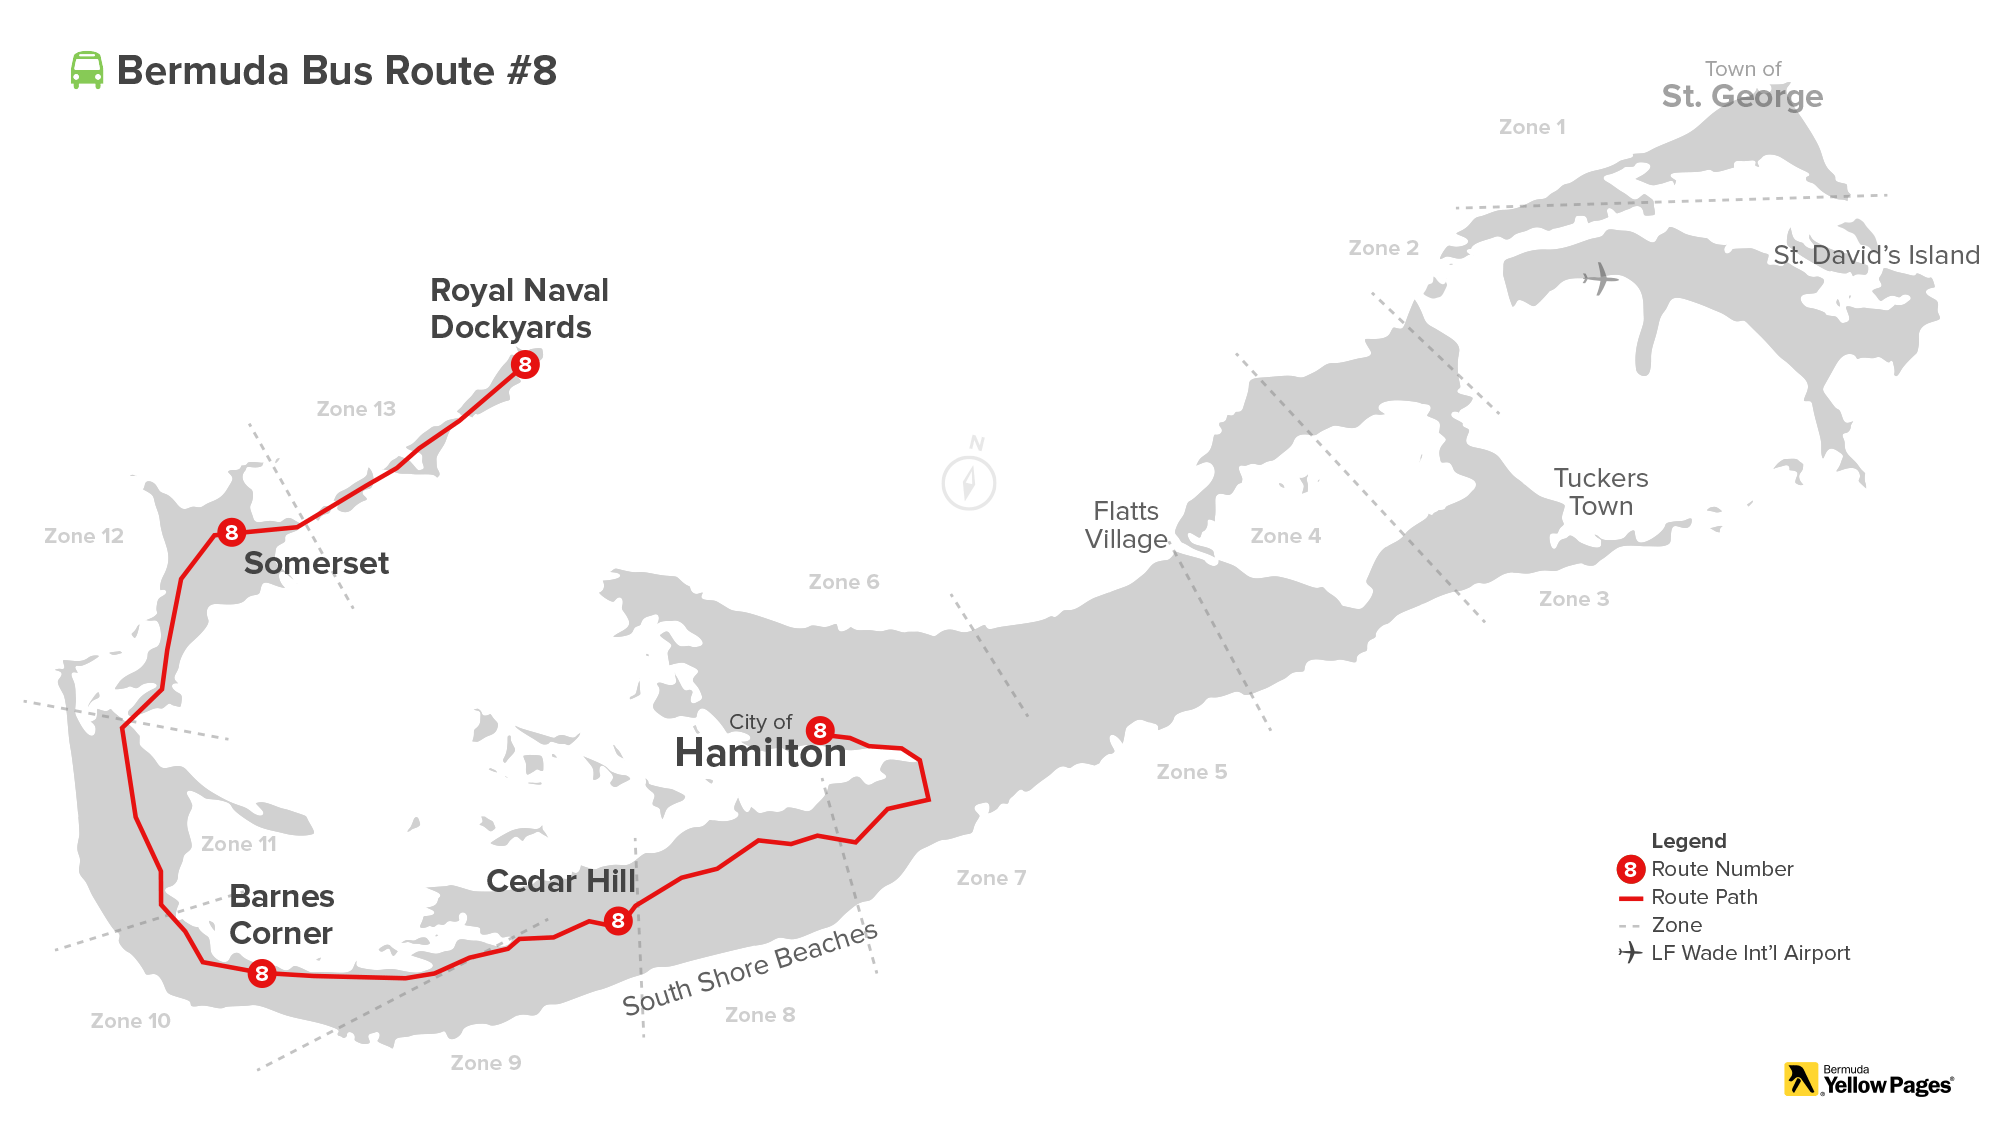 Bermuda Bus Route #8